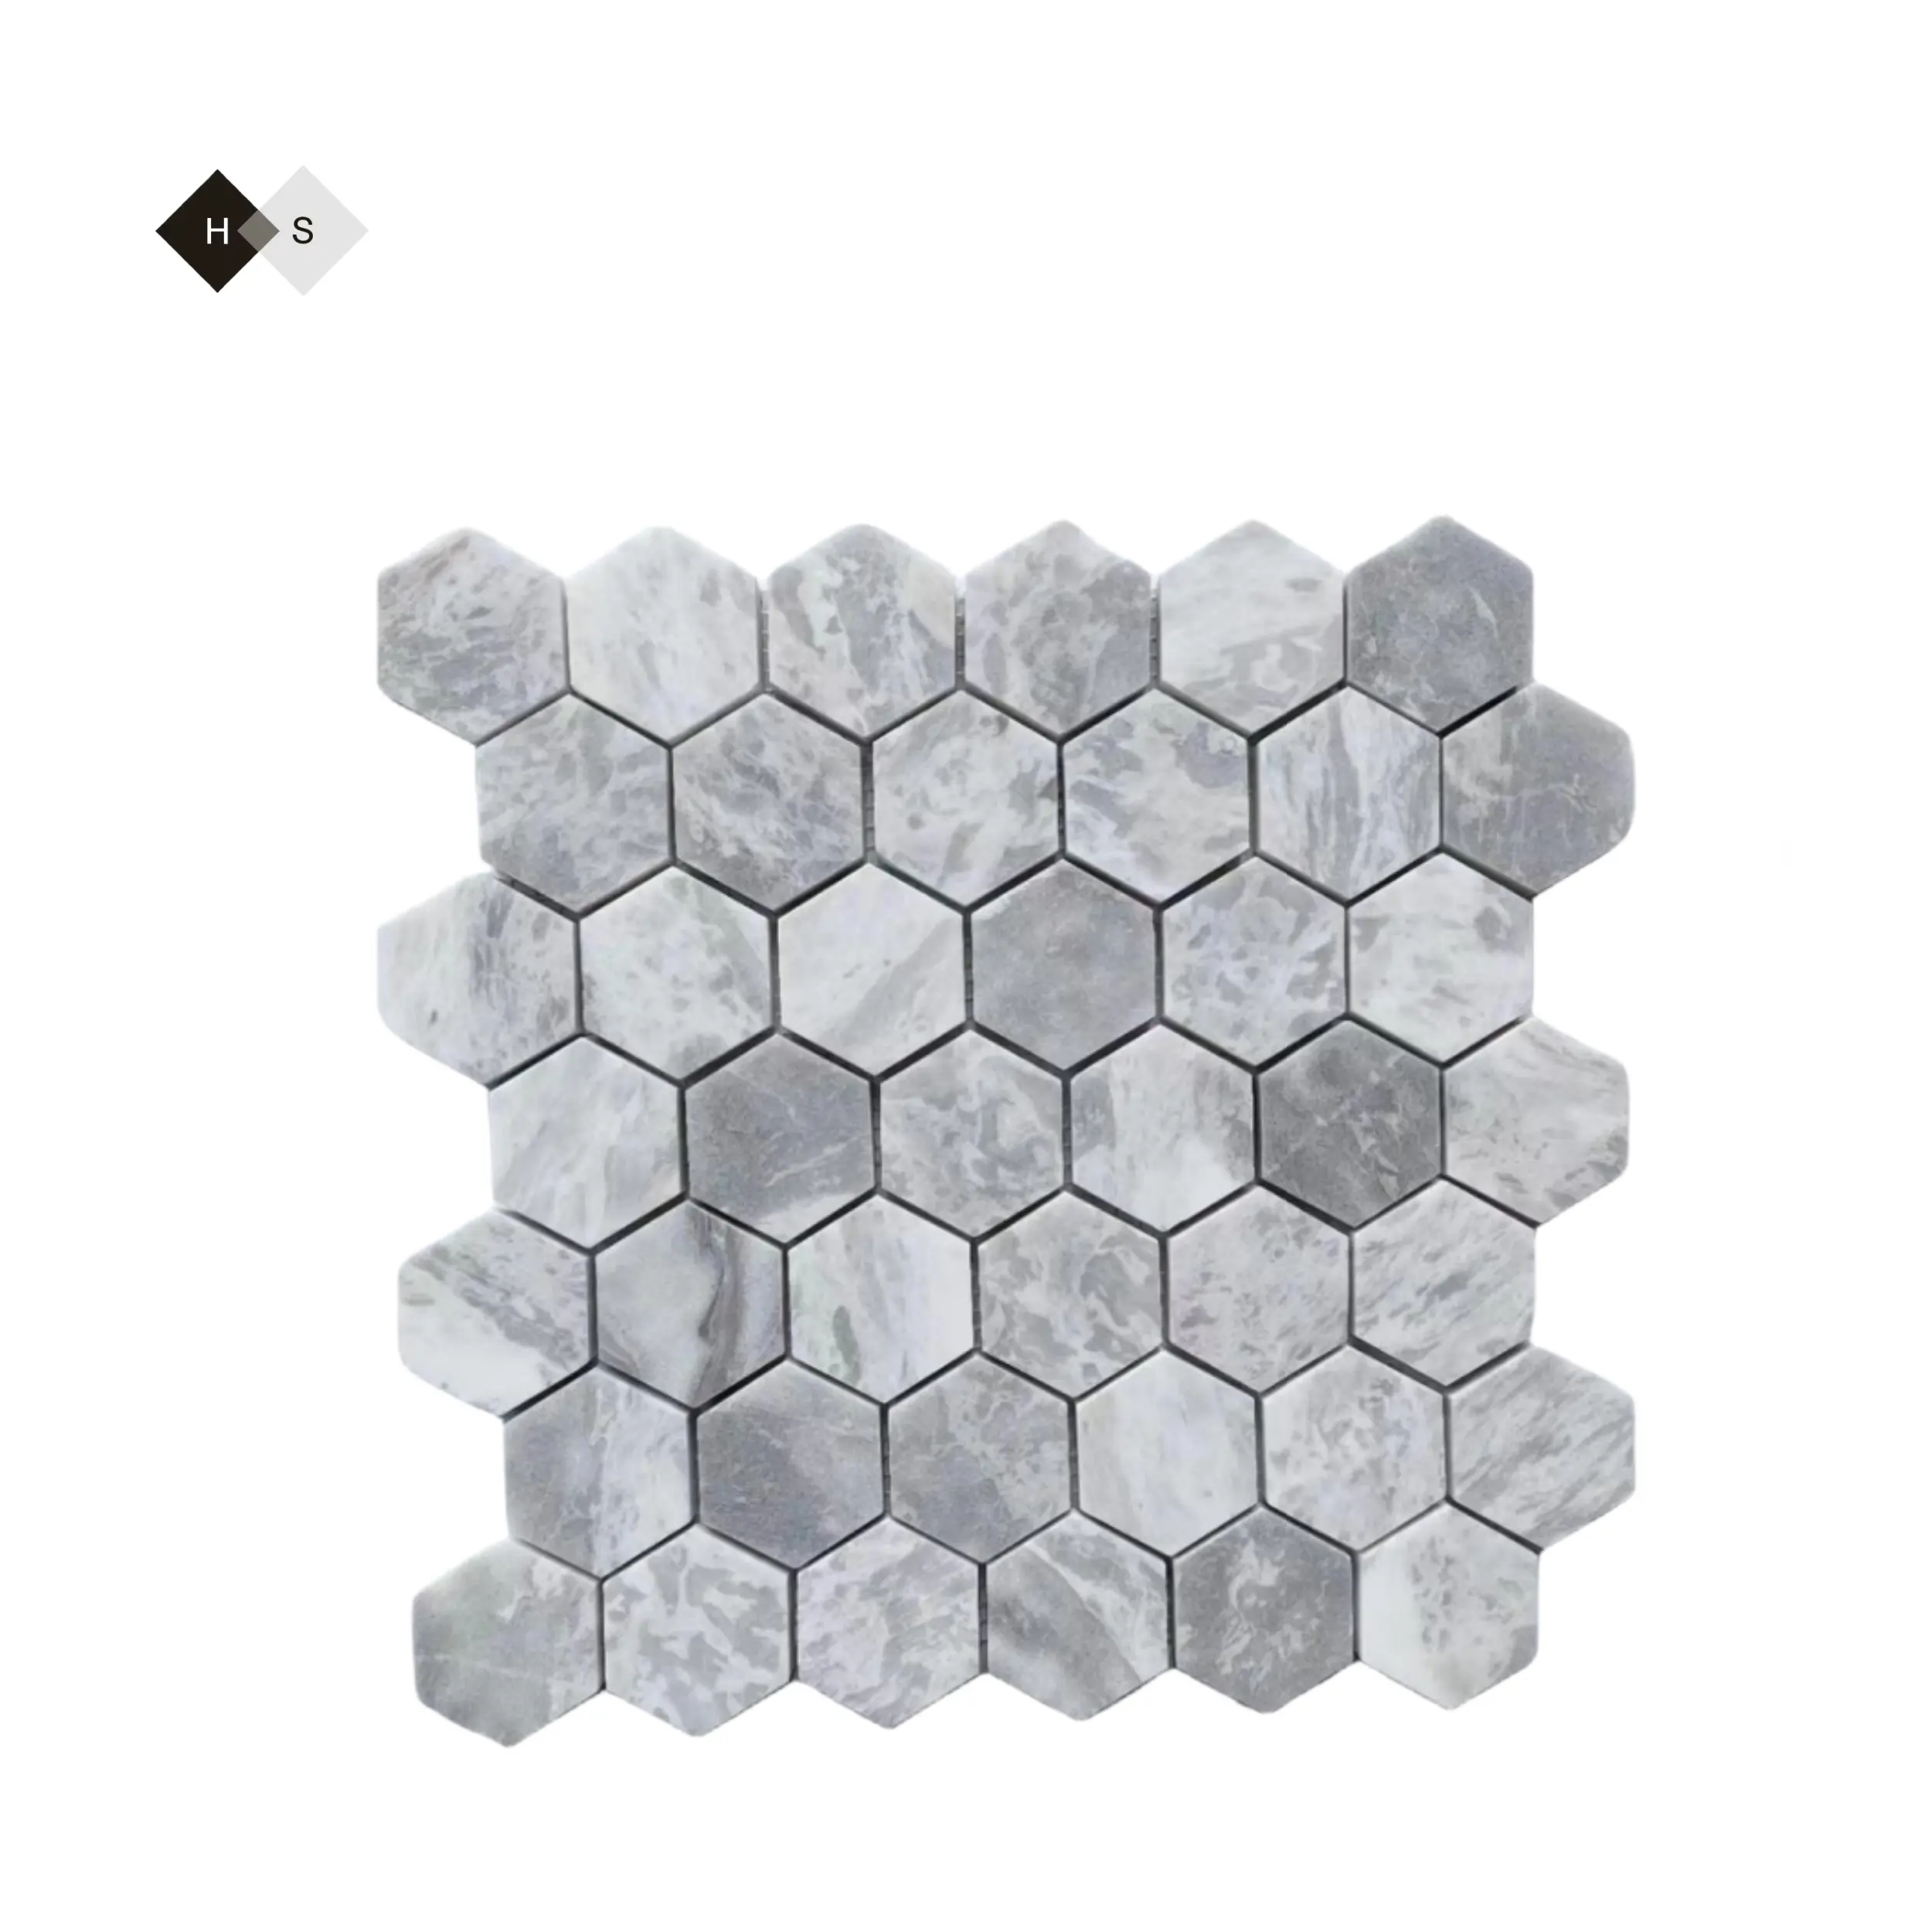 Gran oferta de calidad, azulejo de mosaico de mármol de color blanco, gris, triángulo marrón, azulejo de mosaico de vidrio barato, paneles de fachada exterior